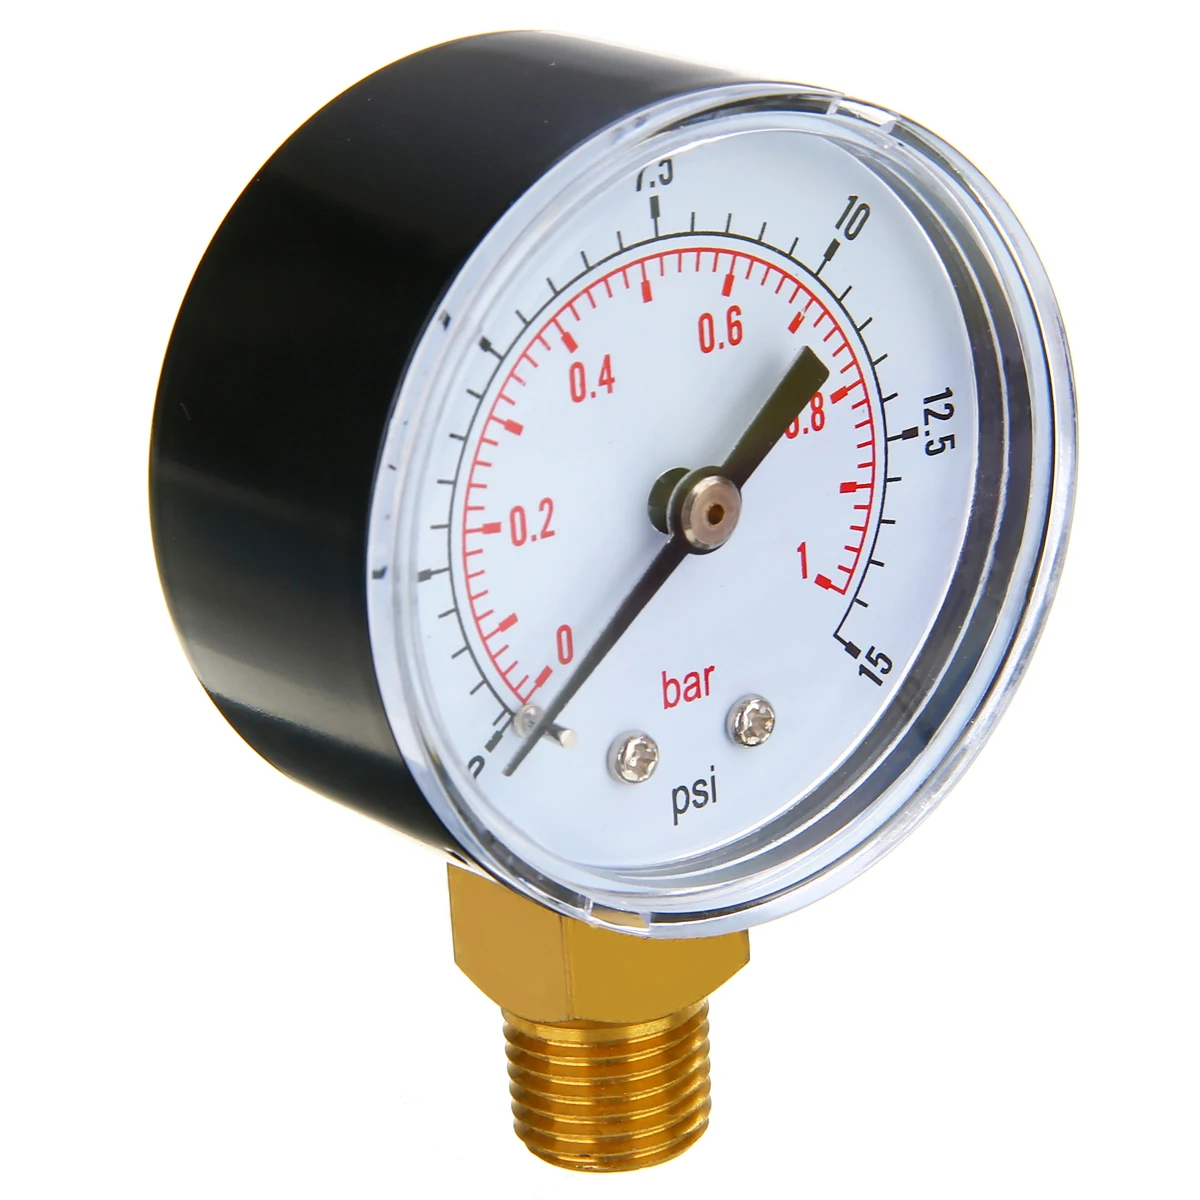 DE Niederdruck Manometer Treibstoff Luft Öl Gas Wasser 0-15 PSI 0-1 Bar 1/4BSPT 